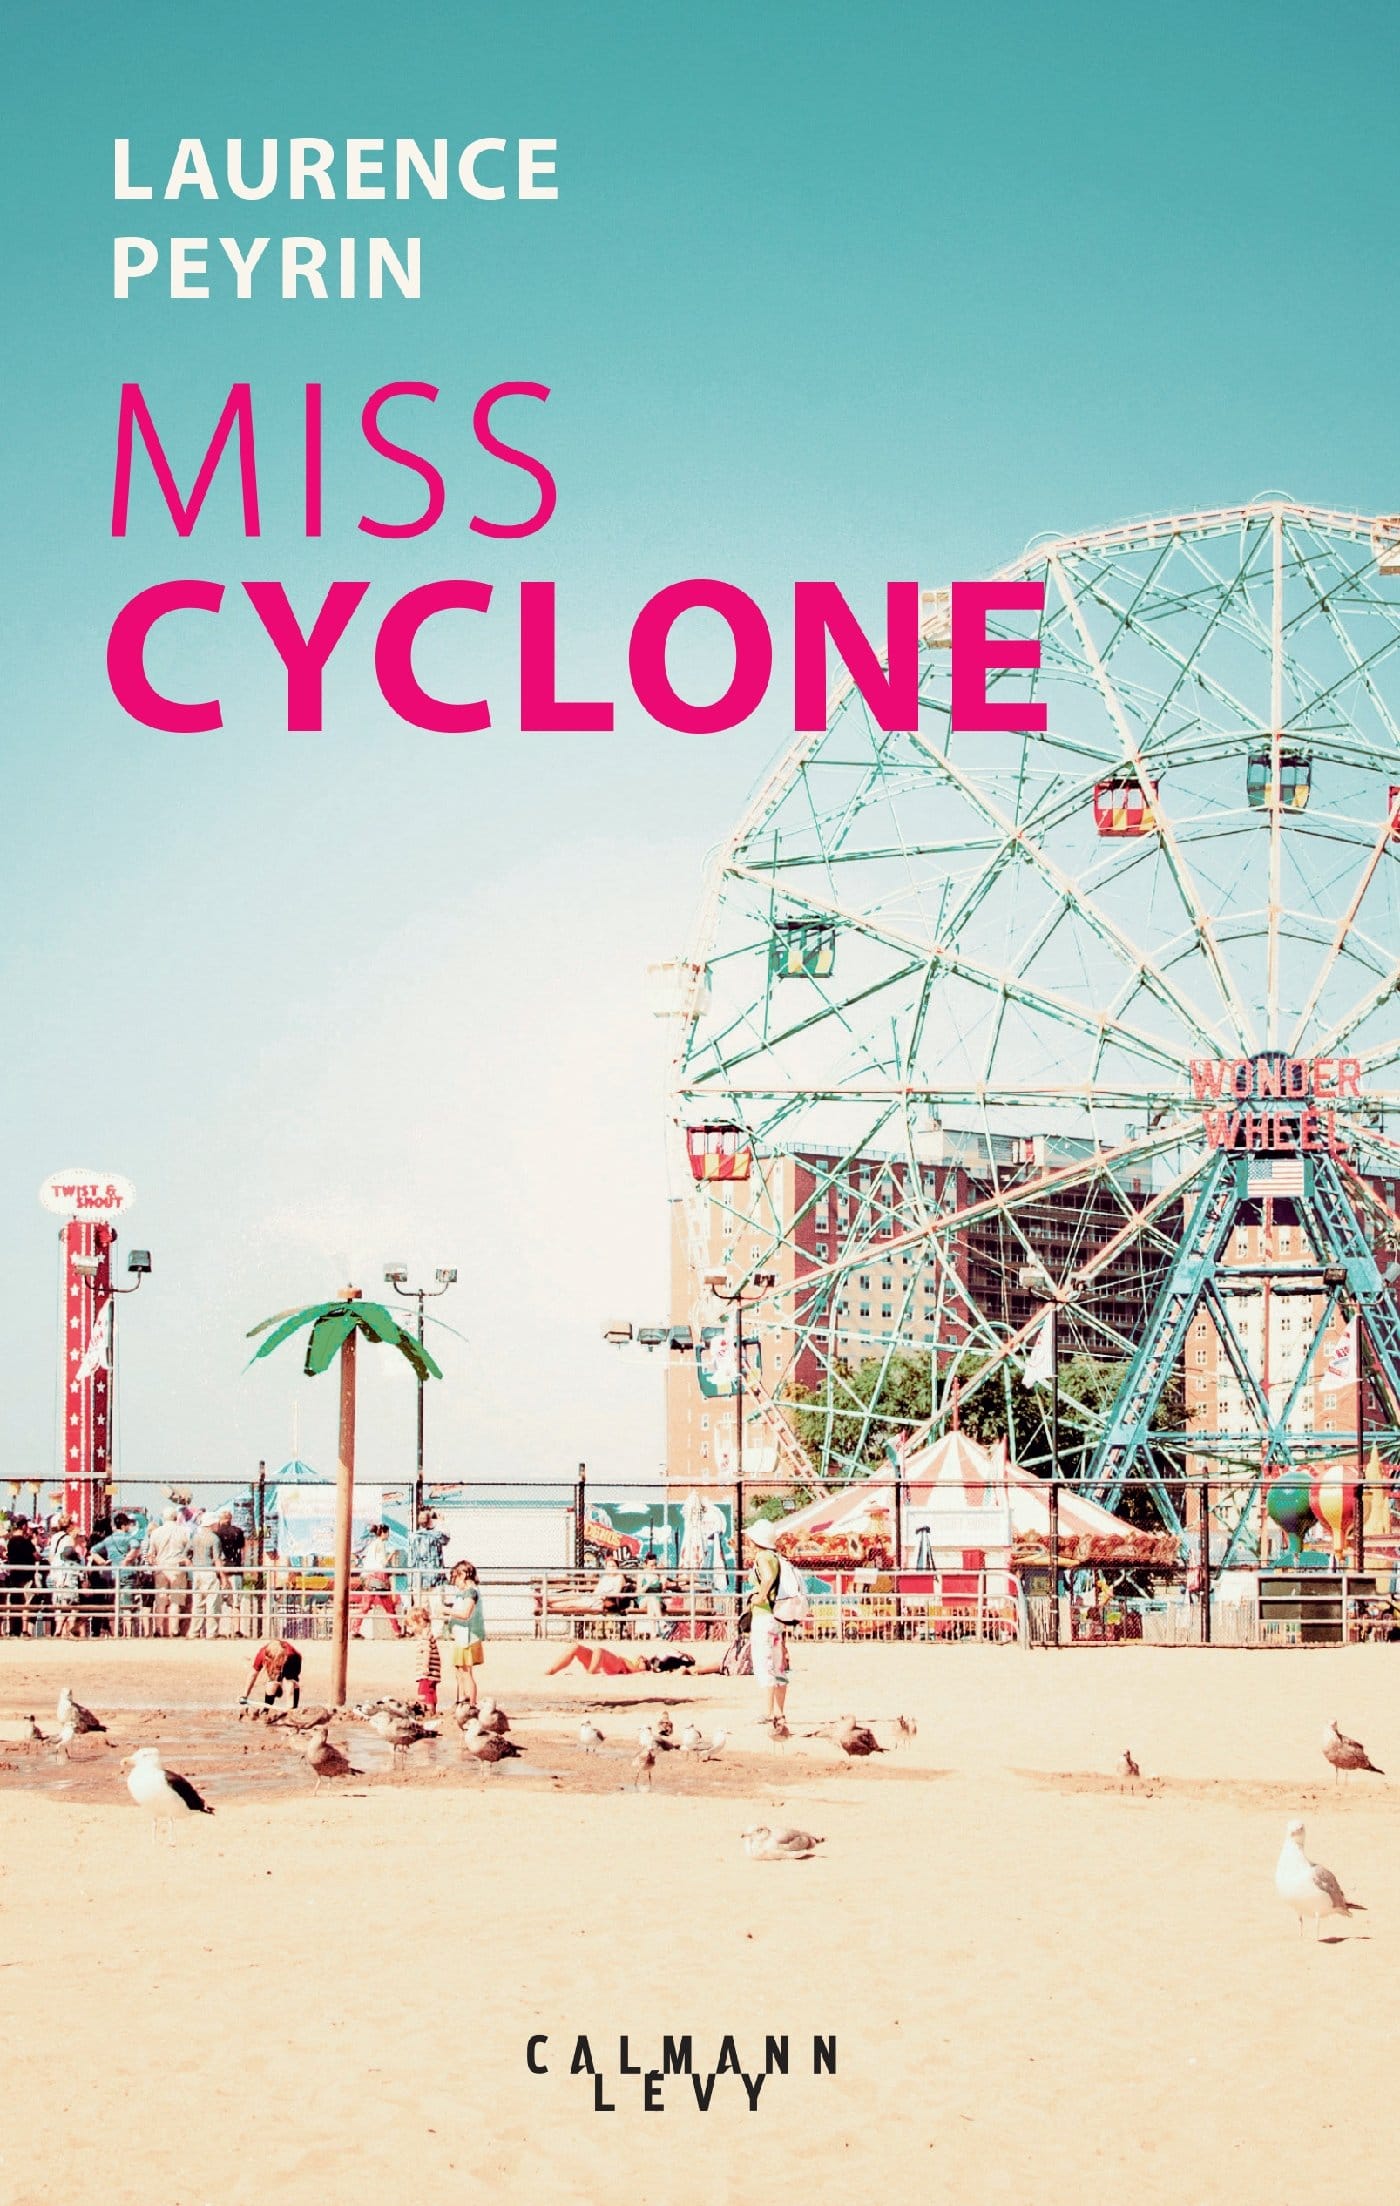 miss cyclone de laurence peyrin. Livre à coney island sur une histoire d'amour. 